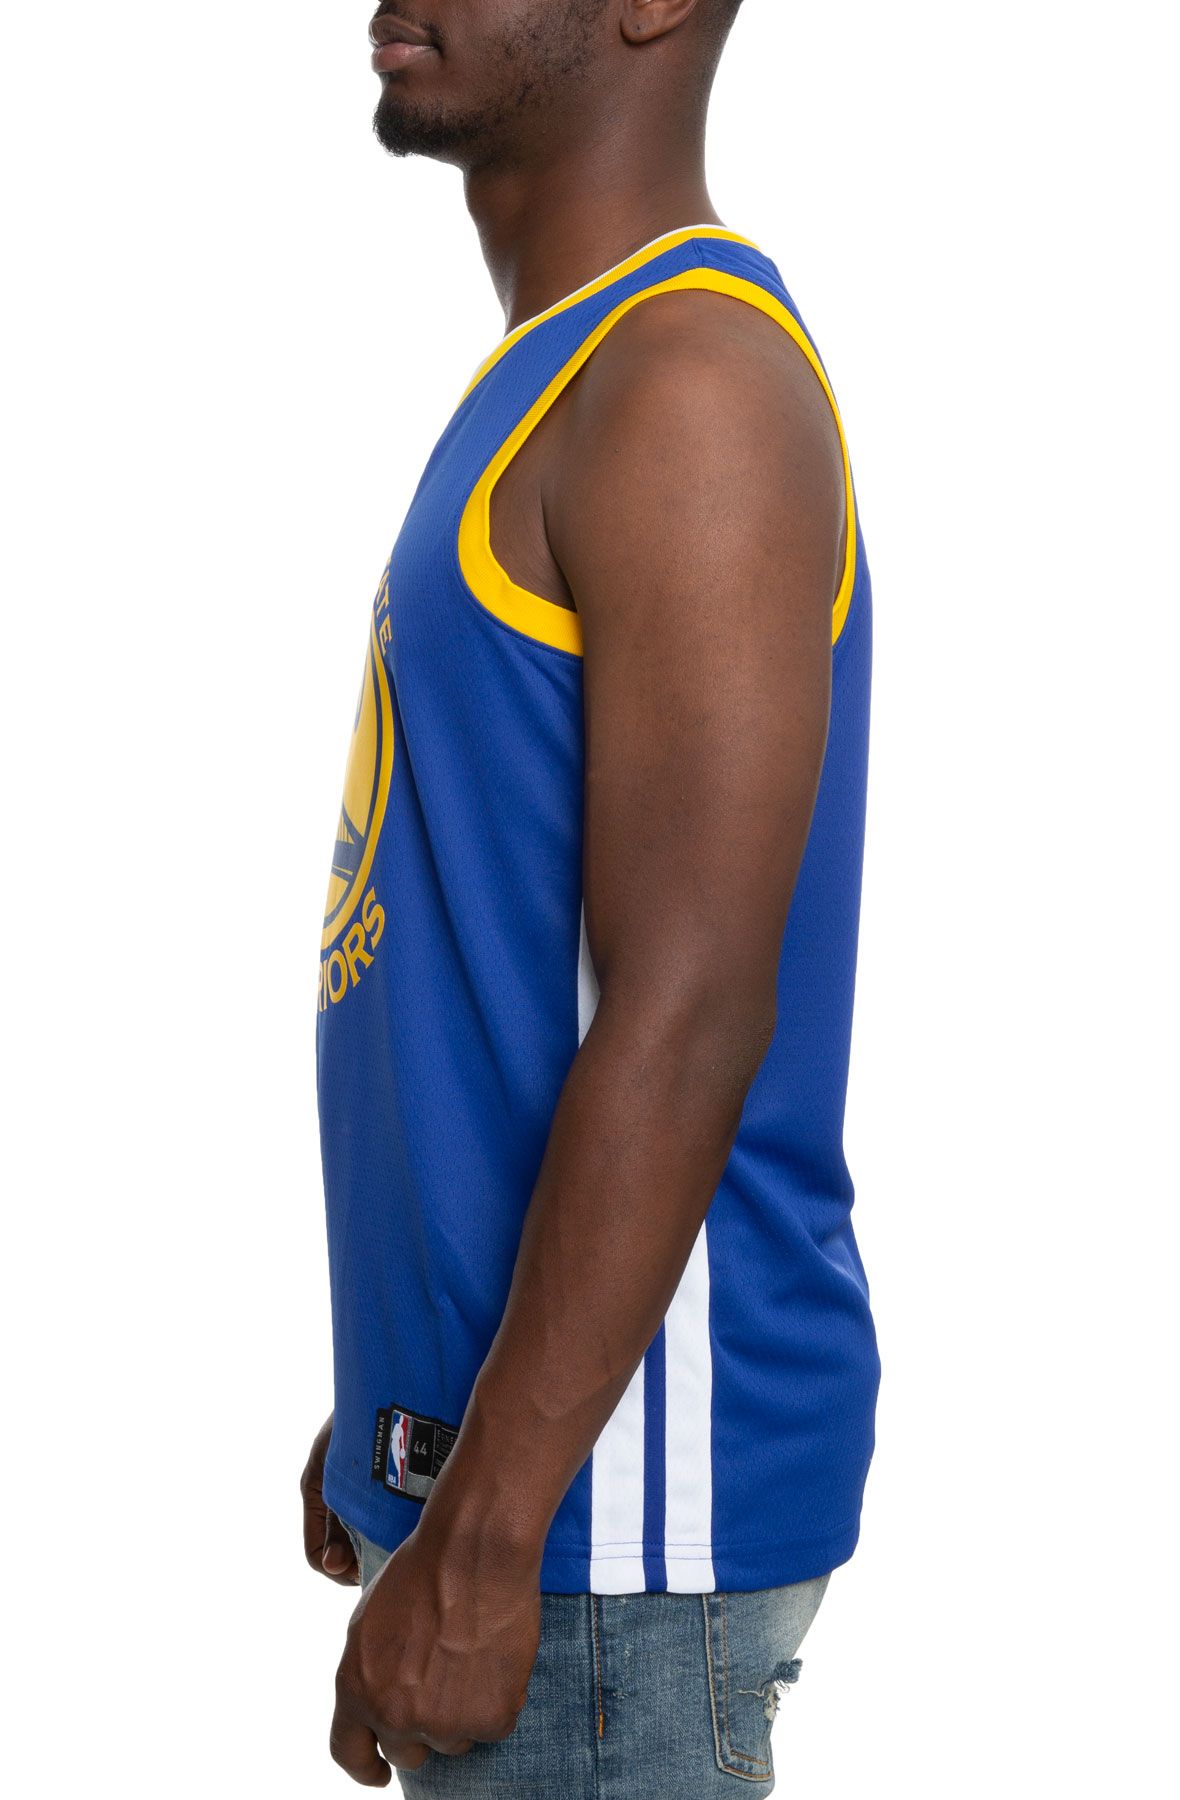 Nike NBA Jersey Stephen Curry - Golden State Warriors Multi AV4947